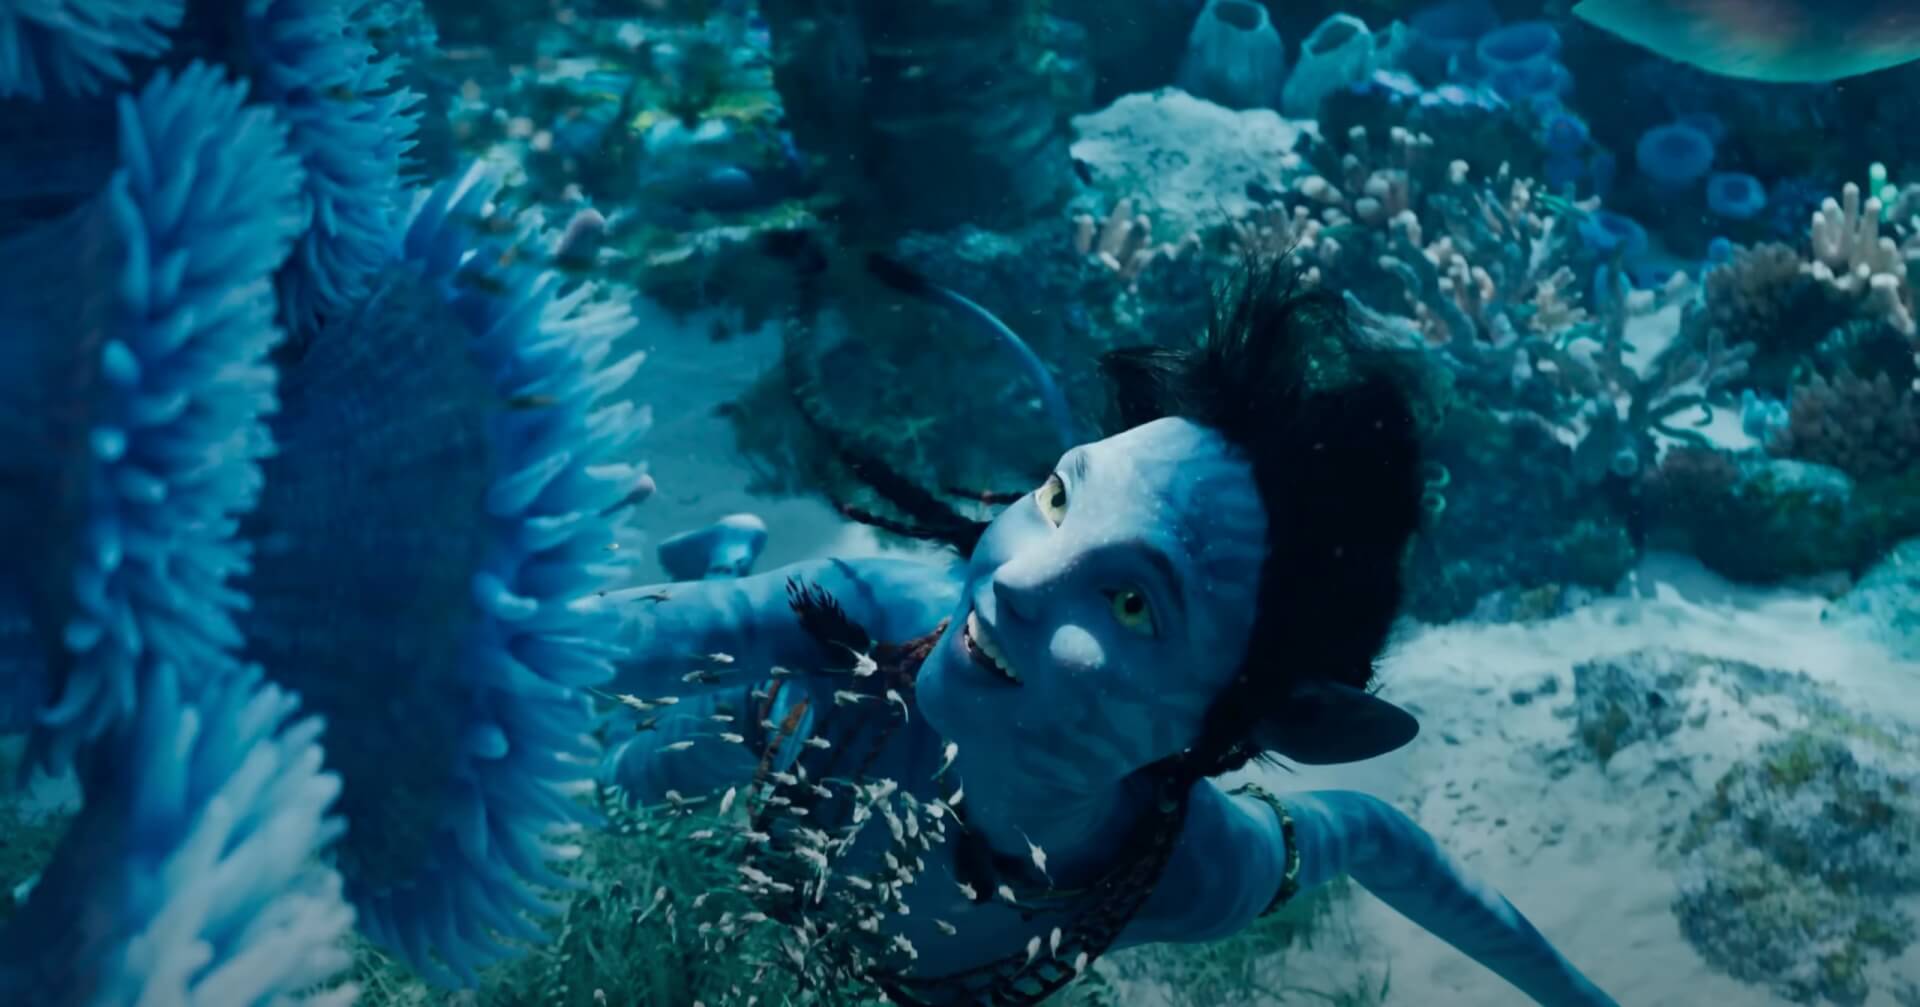 Zoë Saldaña majdnem öt percig tartotta vissza lélegzetét az Avatar: A víz útja víz alatti jeleneteinek forgatásán